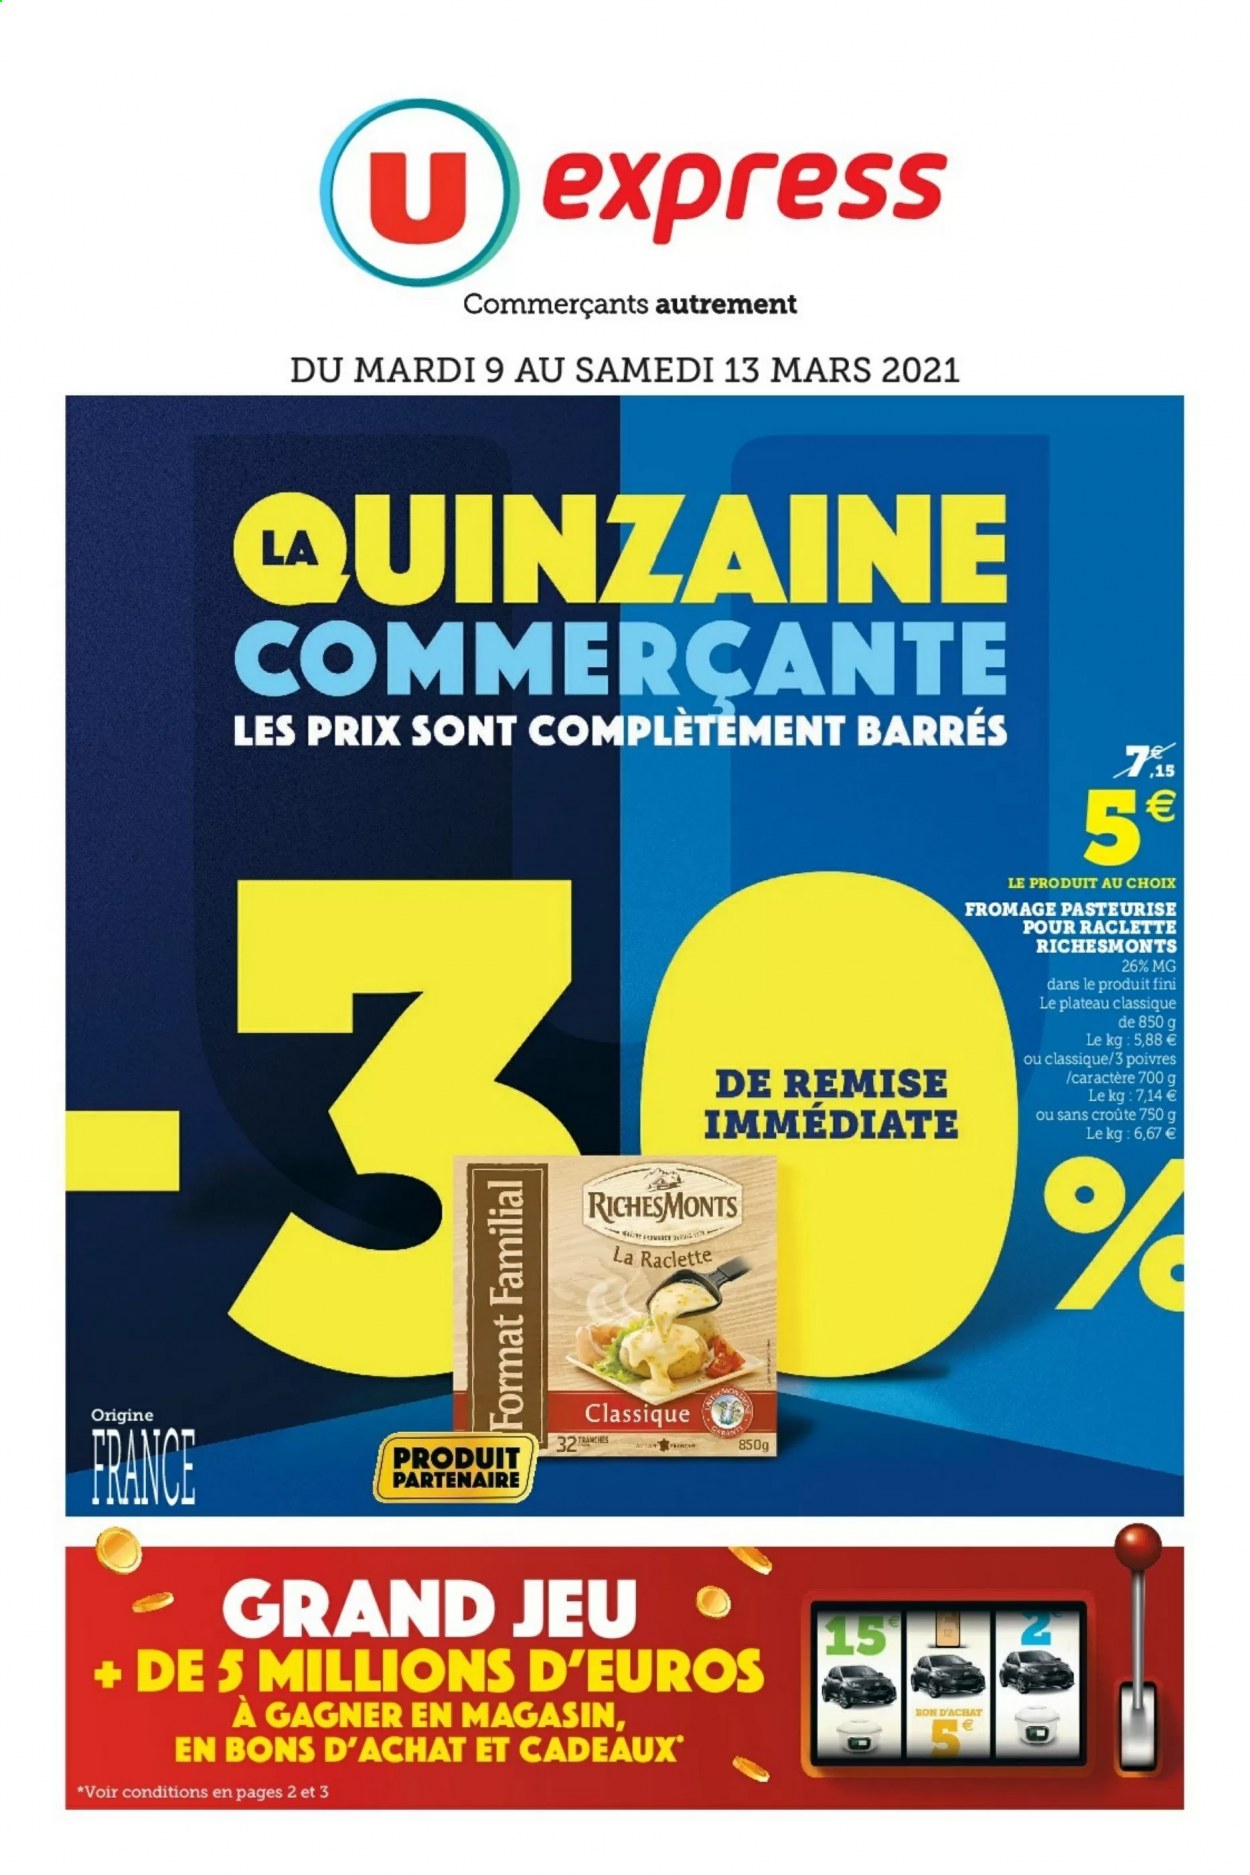 thumbnail - Catalogue U express - 09/03/2021 - 13/03/2021 - Produits soldés - fromage, fromage à raclette, RichesMonts, La Raclette. Page 1.